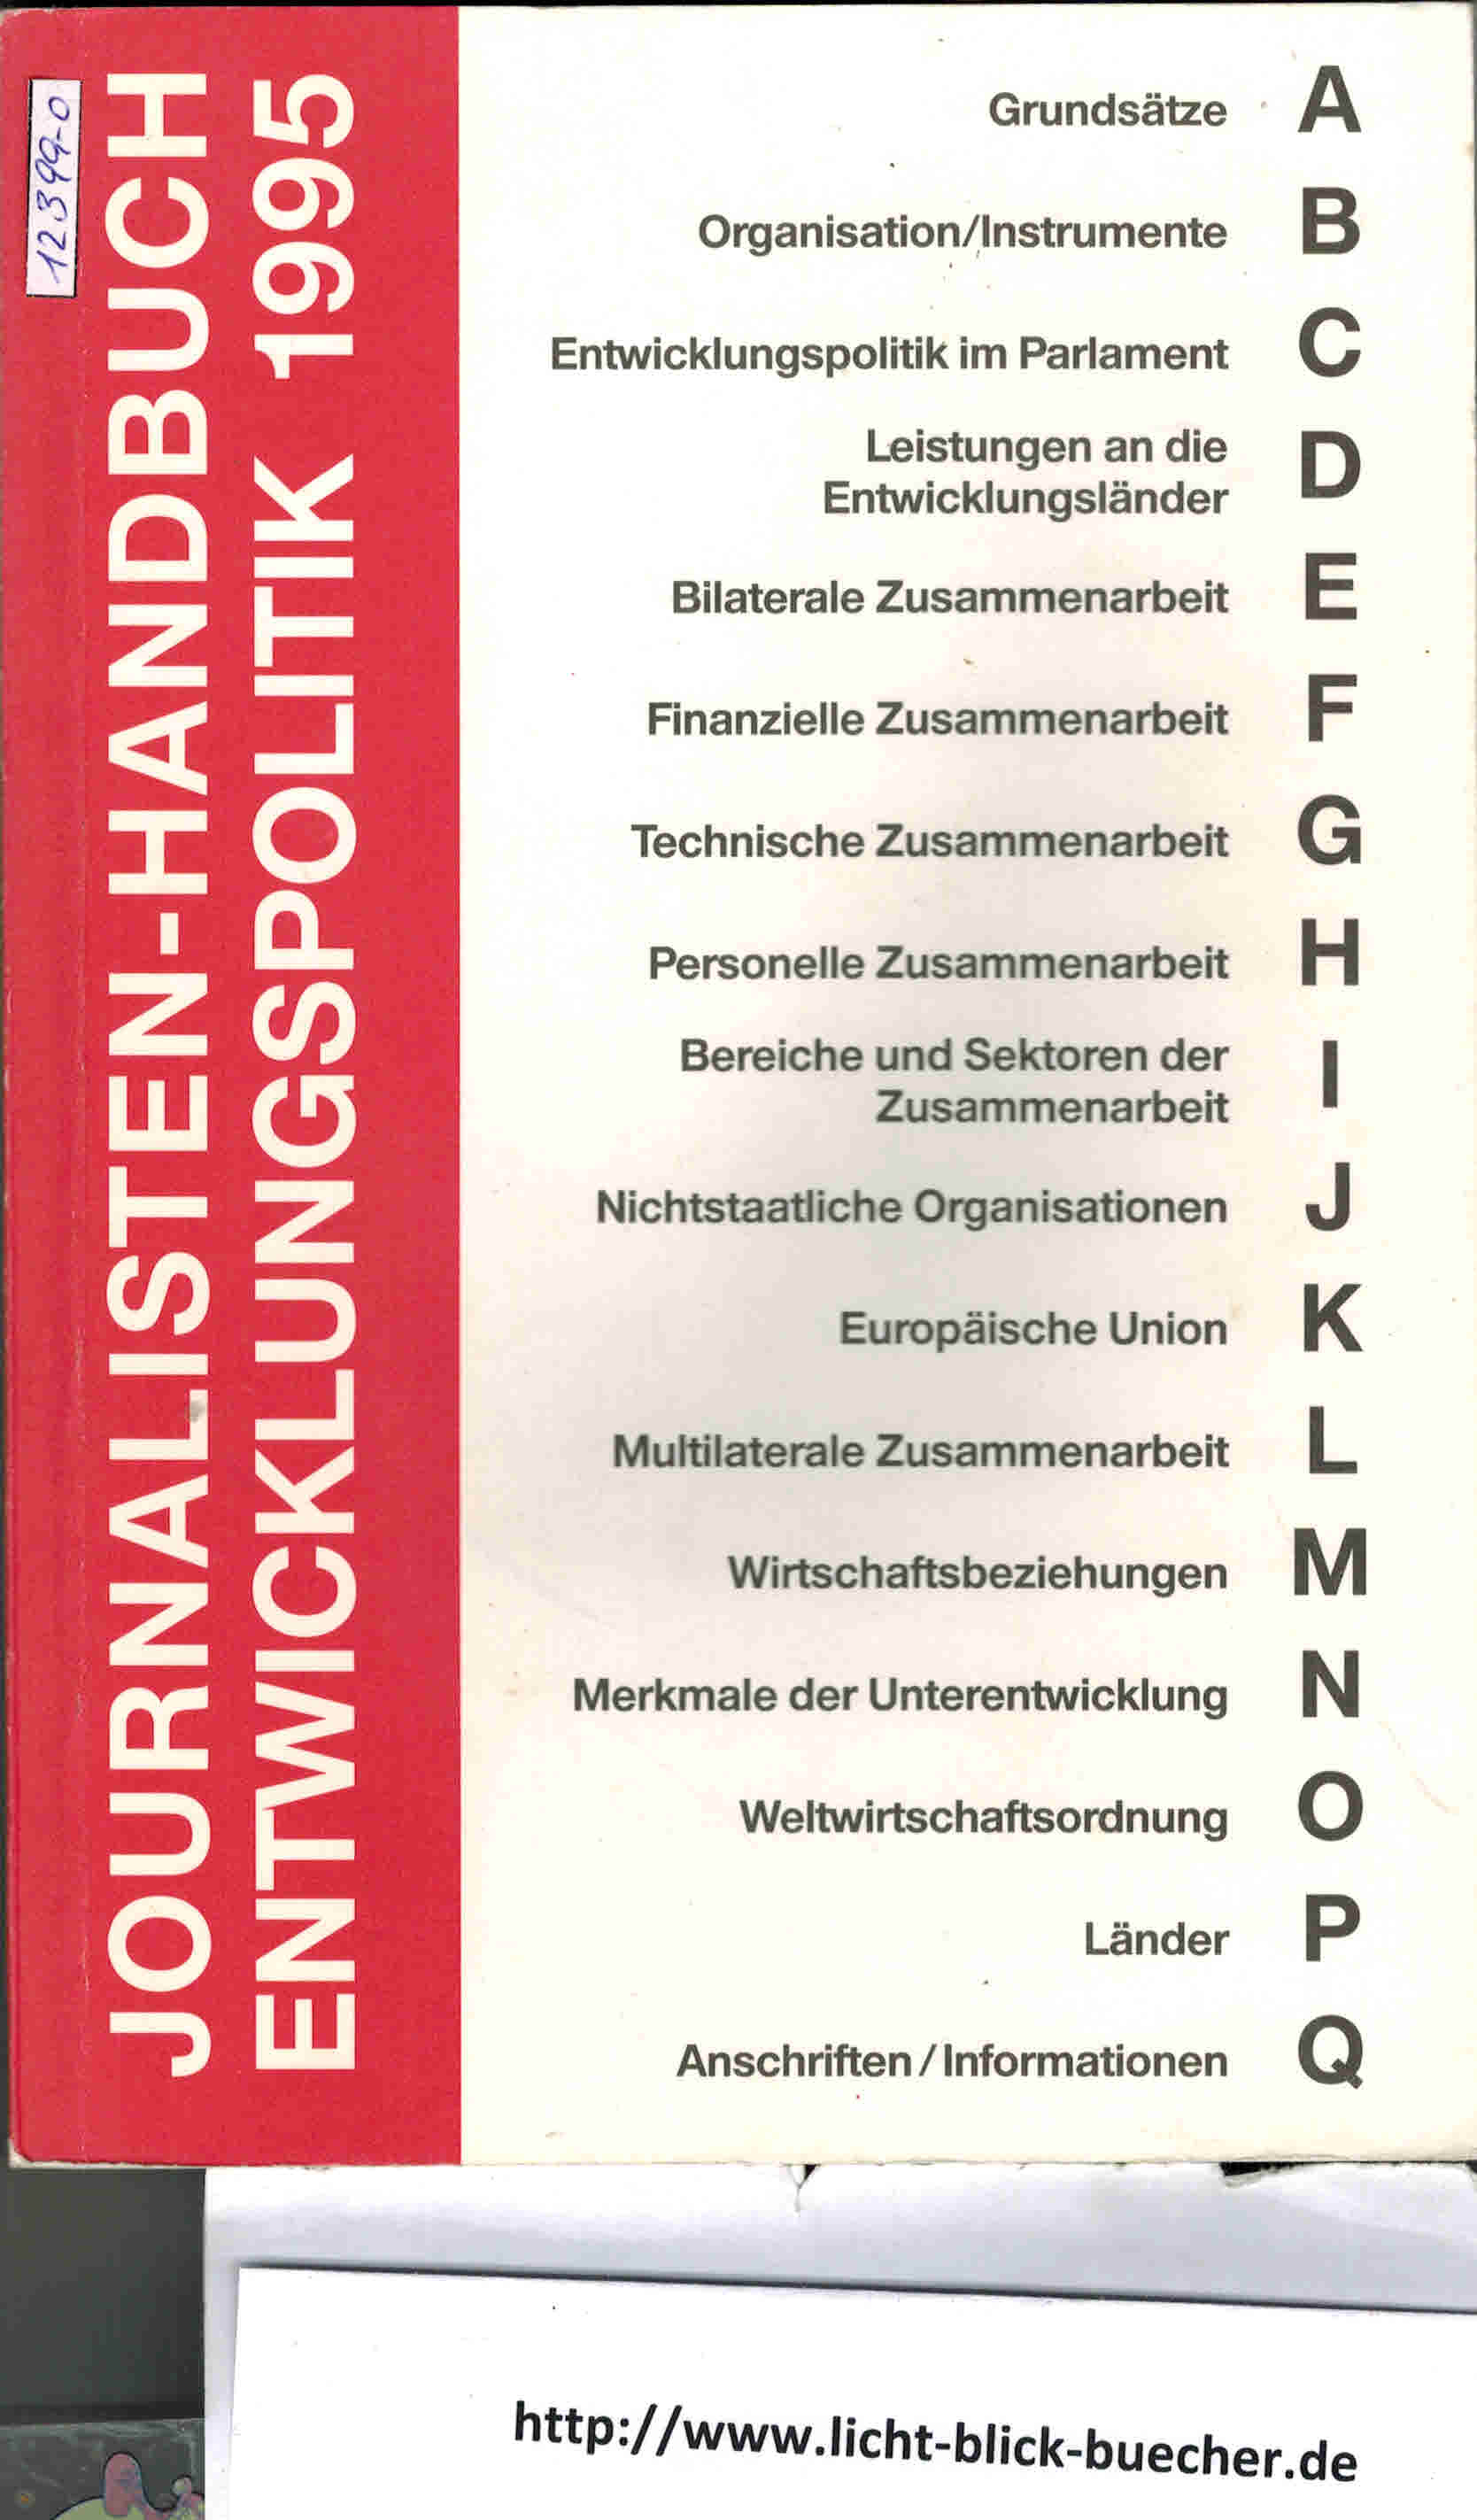 Journalisten- Handbuch Entwicklungspolitik 1995Bundesministerium fuer wirtschaftliche Zusammenarbeit und Entwicklung ( BMZ )